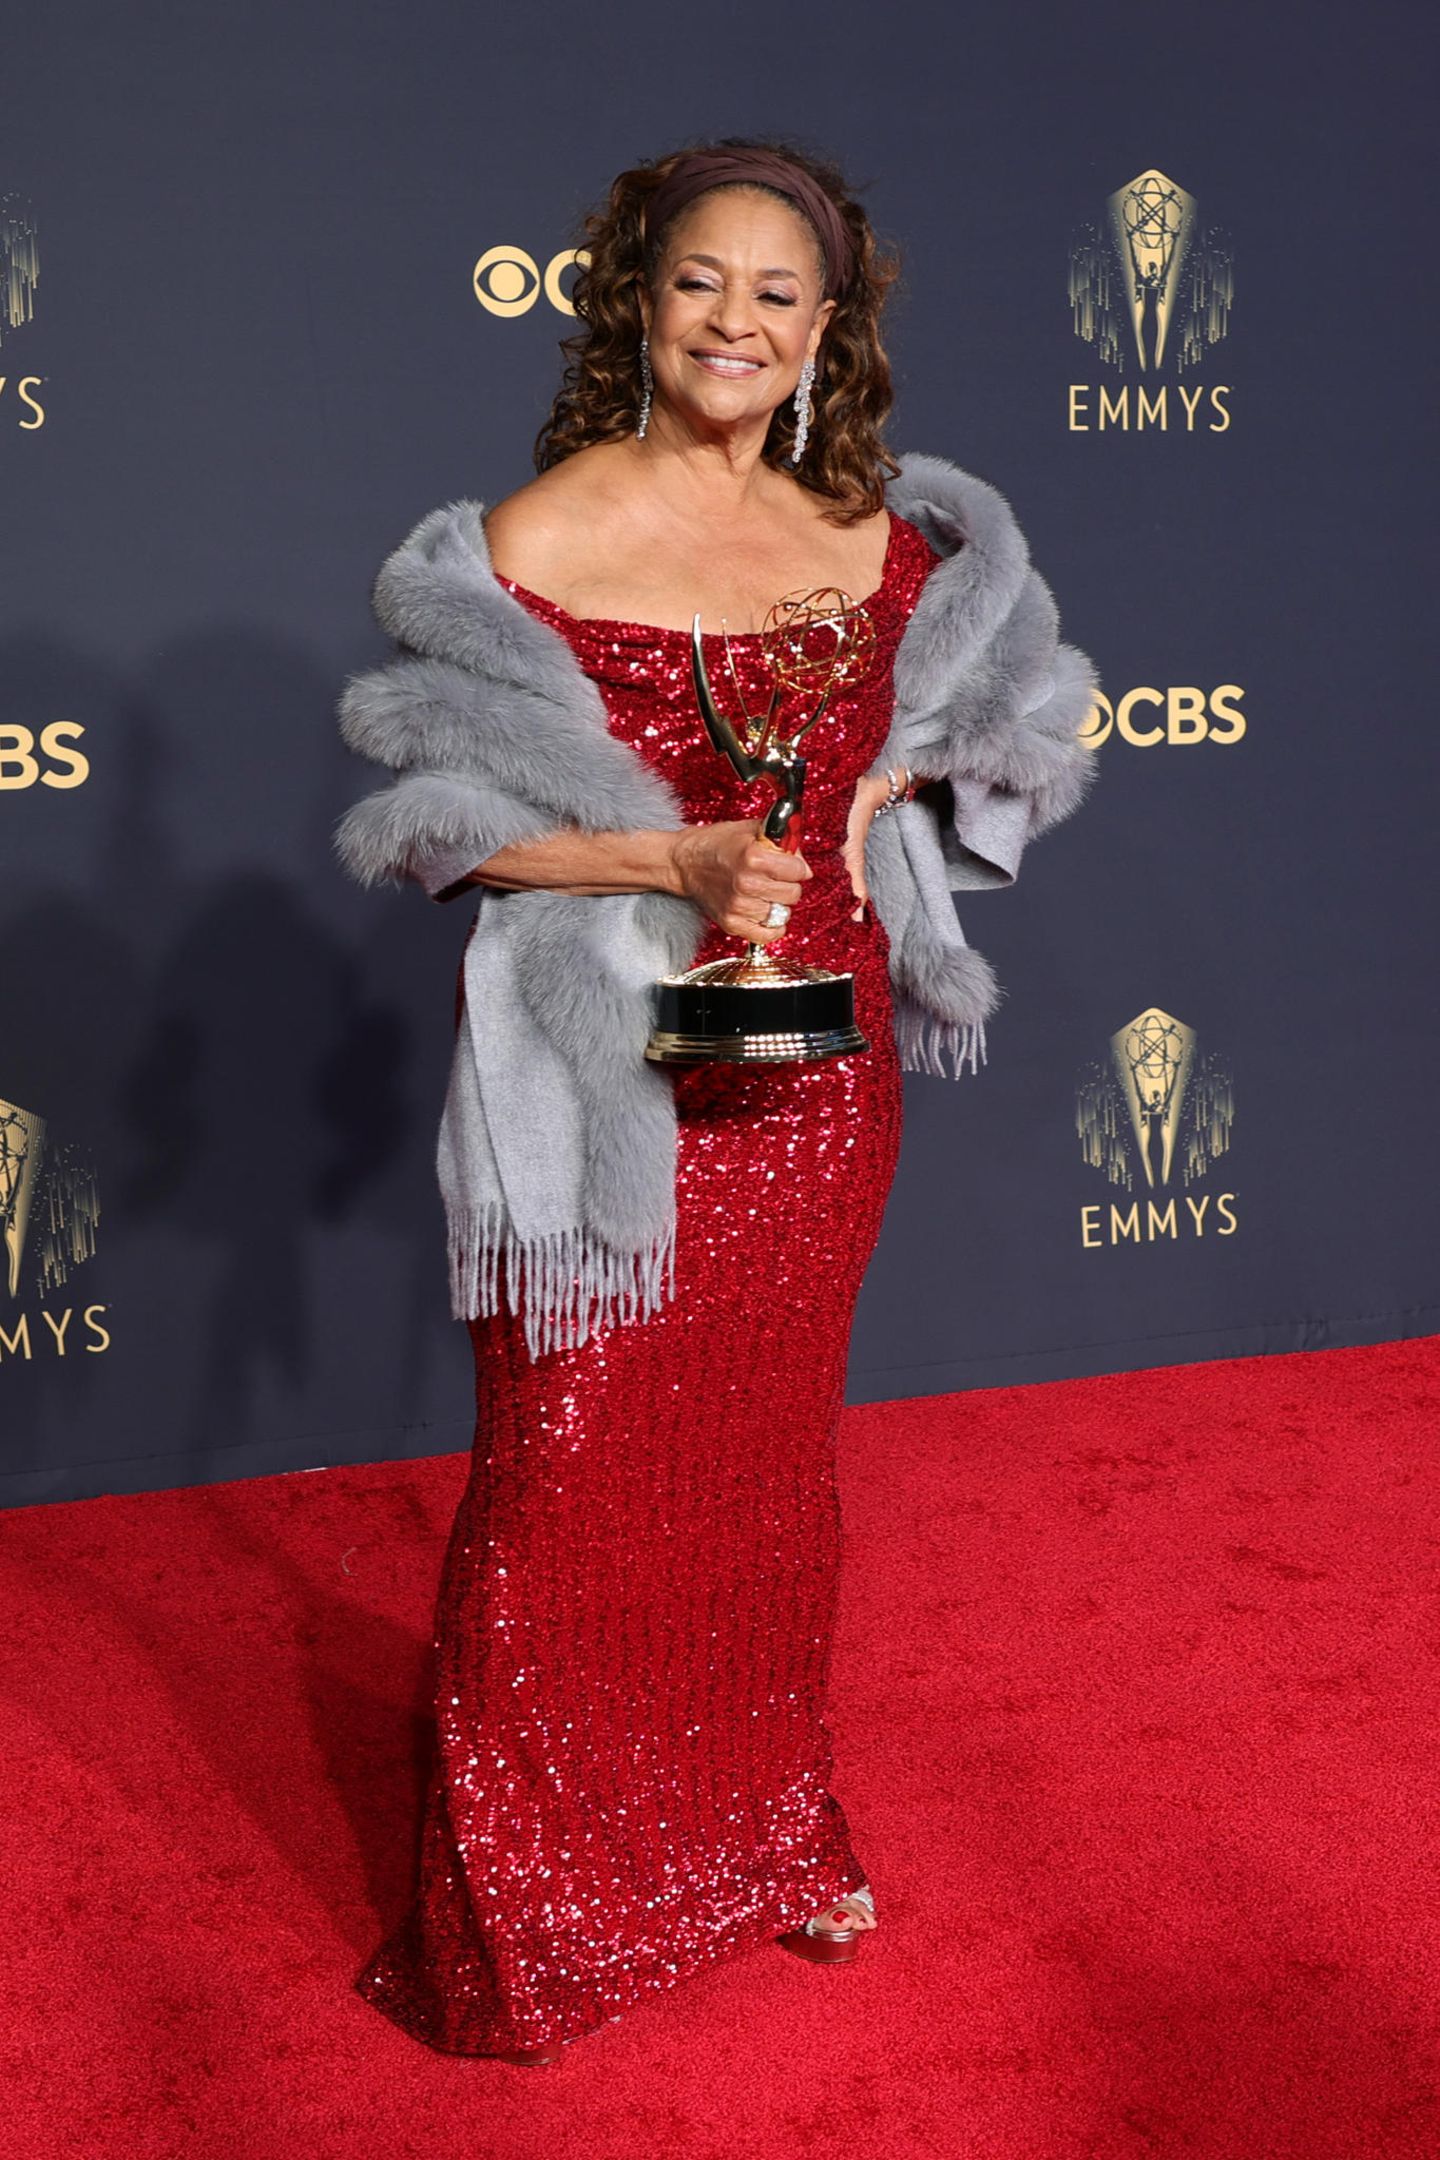 Debbie Allen wurde mit dem "Television Academy’s 2021 Governors Award" ausgezeichnet. Wir verleihen der US-Amerikanerin einen Award für einen besonders glamourösen Auftritt. In ihrer roten, funkelnden Robe macht die 71-Jährige eine herausragende Figur und versprüht wahren Hollywood-Glamour.